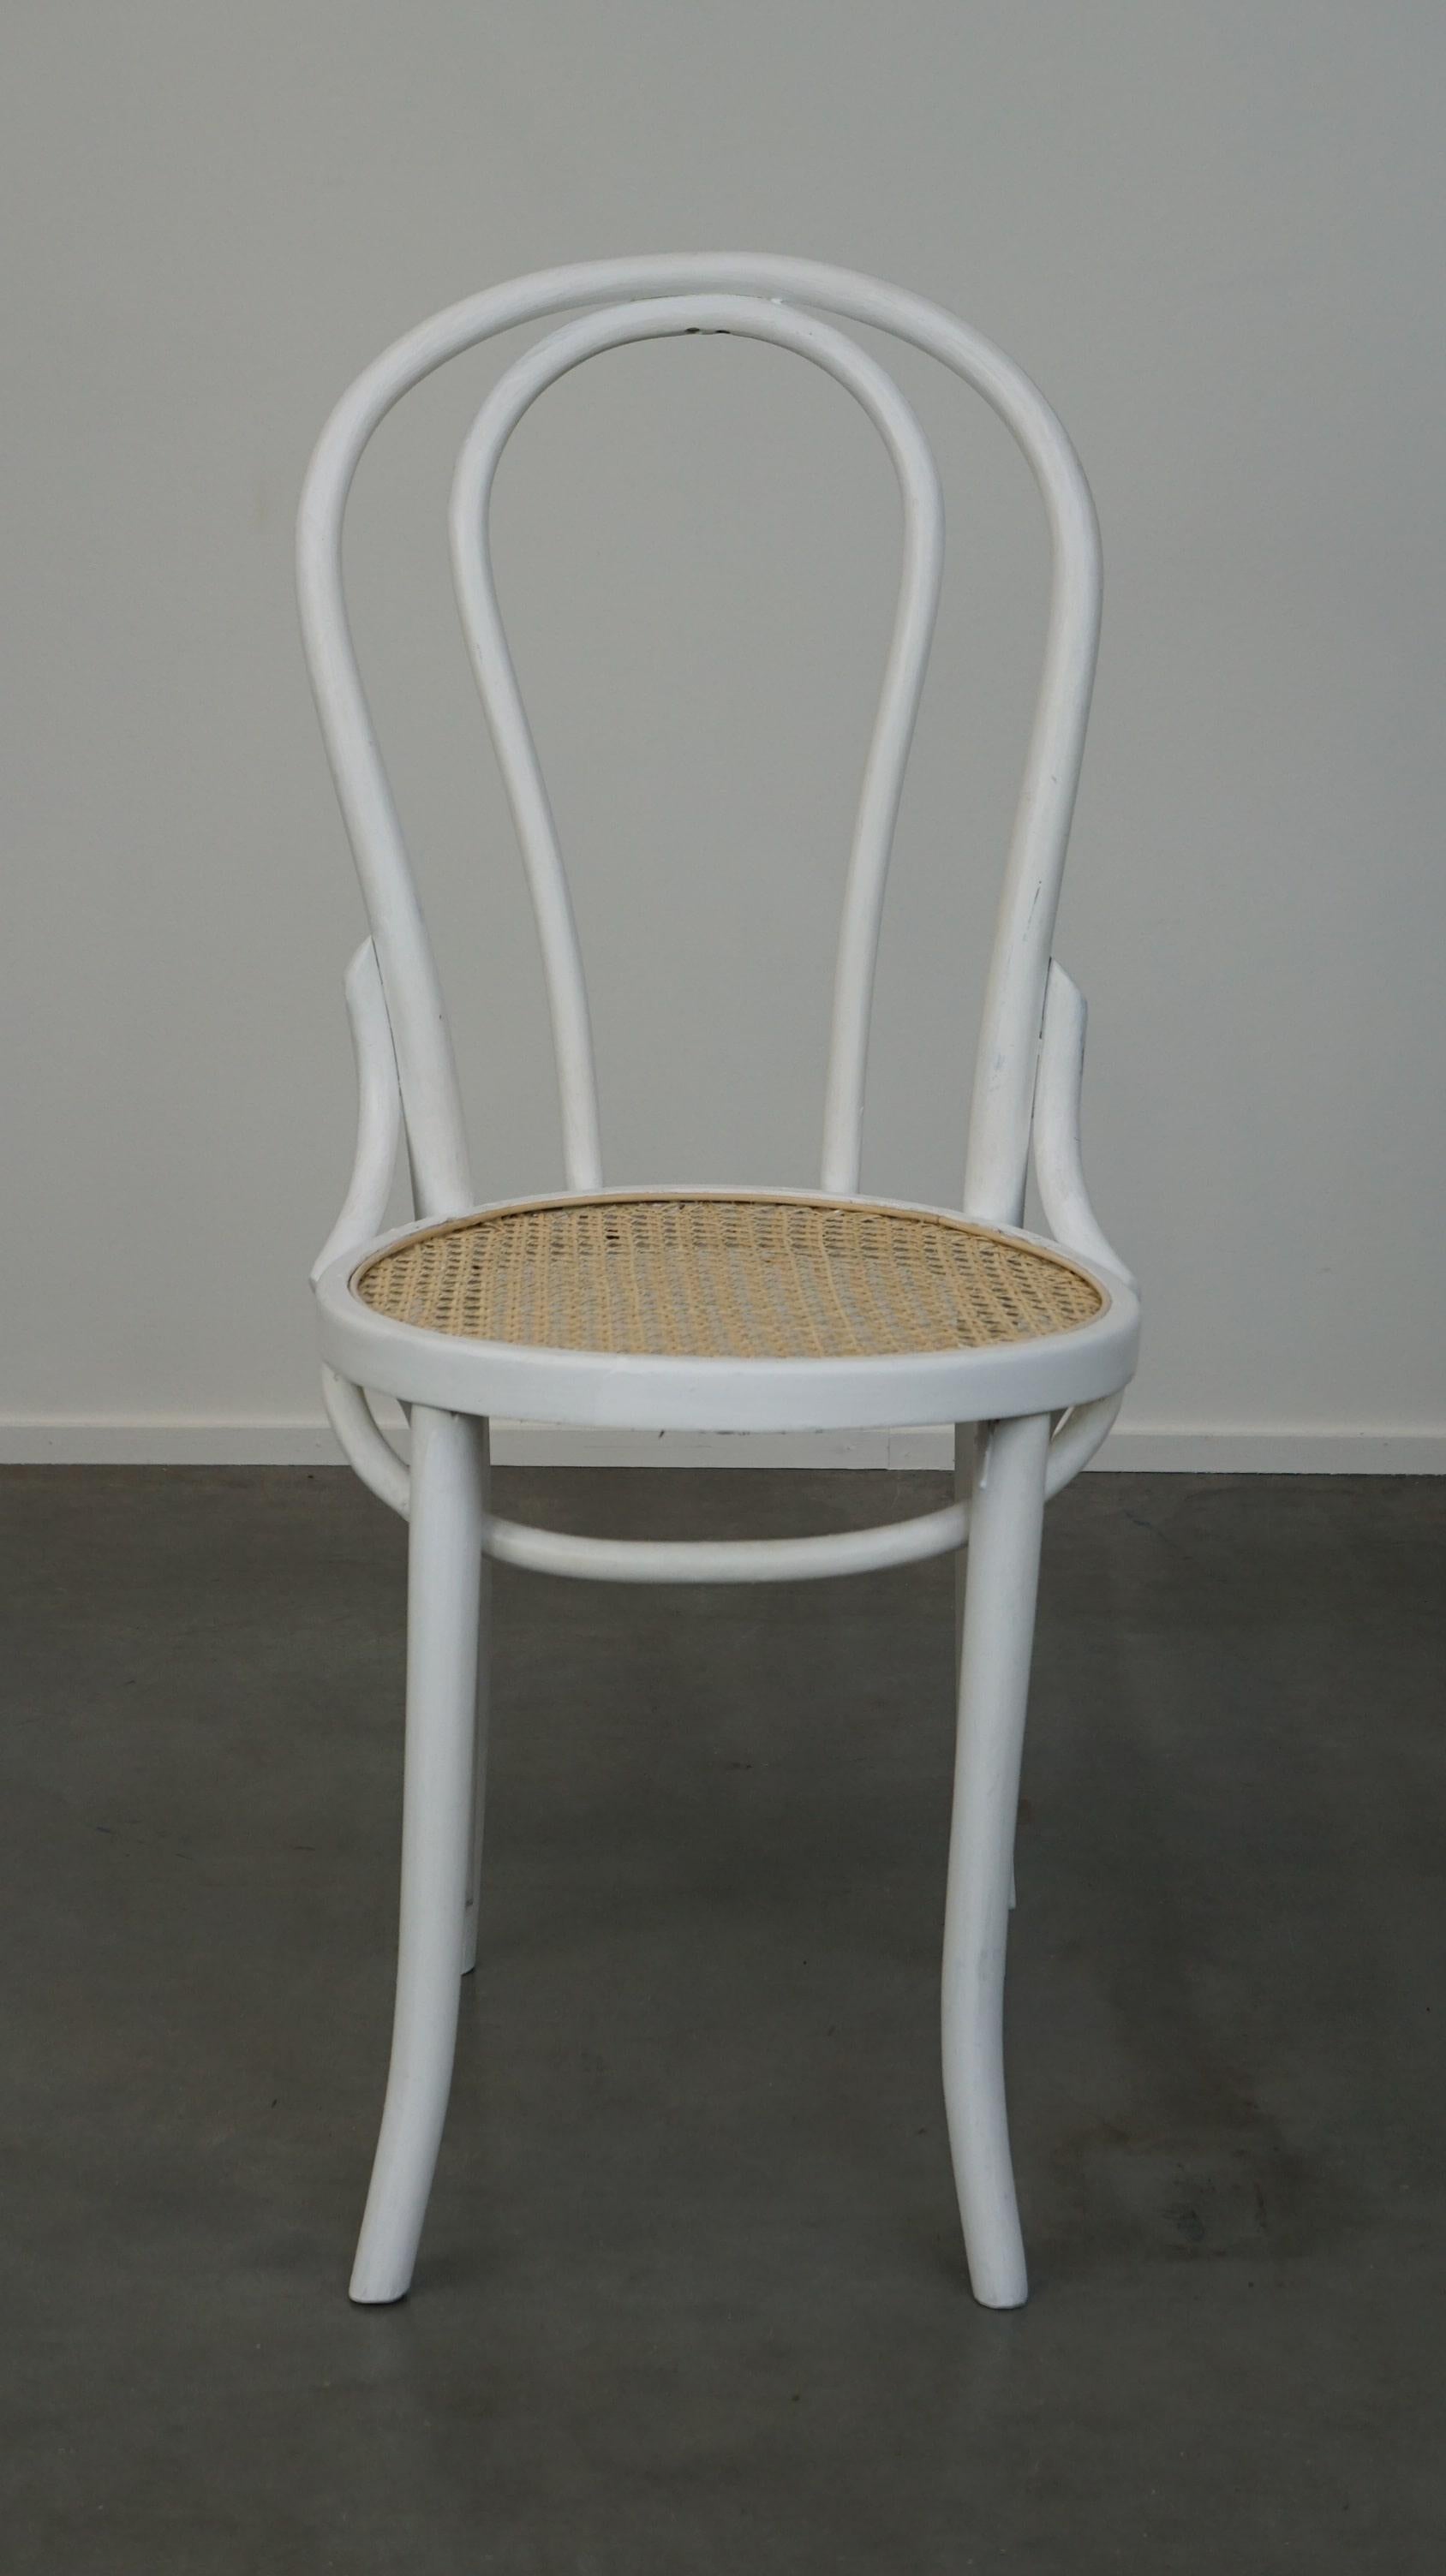 Der Stuhl Nr. 18 ist einer der berühmtesten Stühle von Thonet. Dieser Stuhl wurde von dem österreichischen Designer Josef Hoffmann hergestellt, wahrscheinlich um 1900. Dieser Stuhl ist weiß überstrichen und hat eine neue handgeflochtene Sitzfläche.